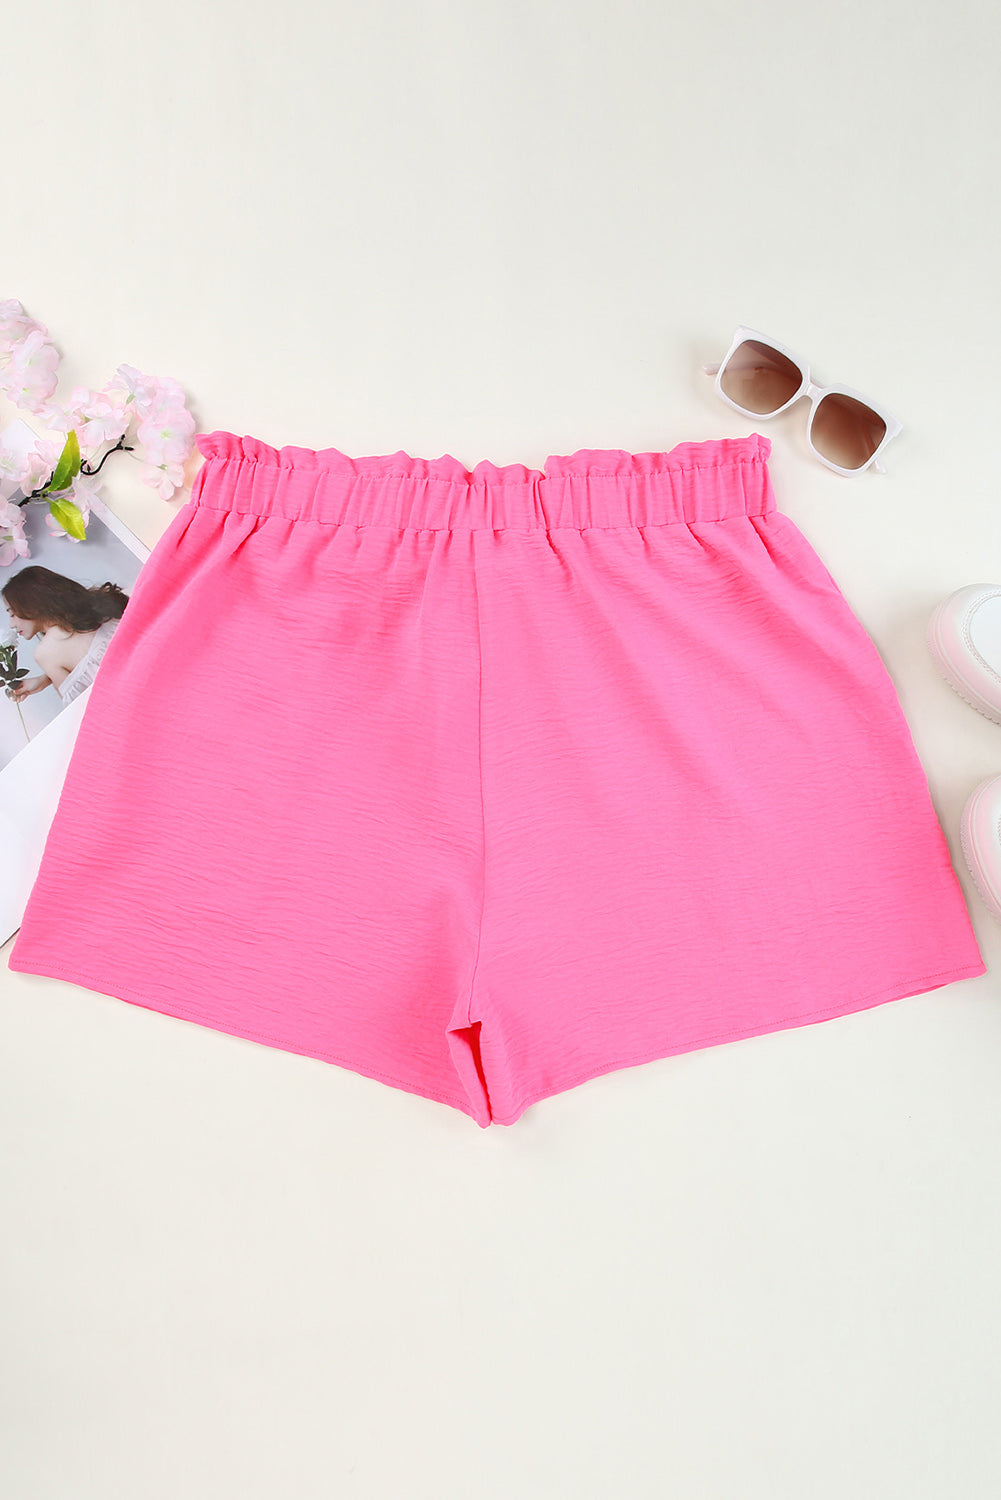 Rosa Paperbag-Shorts mit hoher Taille, strukturiert, Freizeitshorts in Übergröße